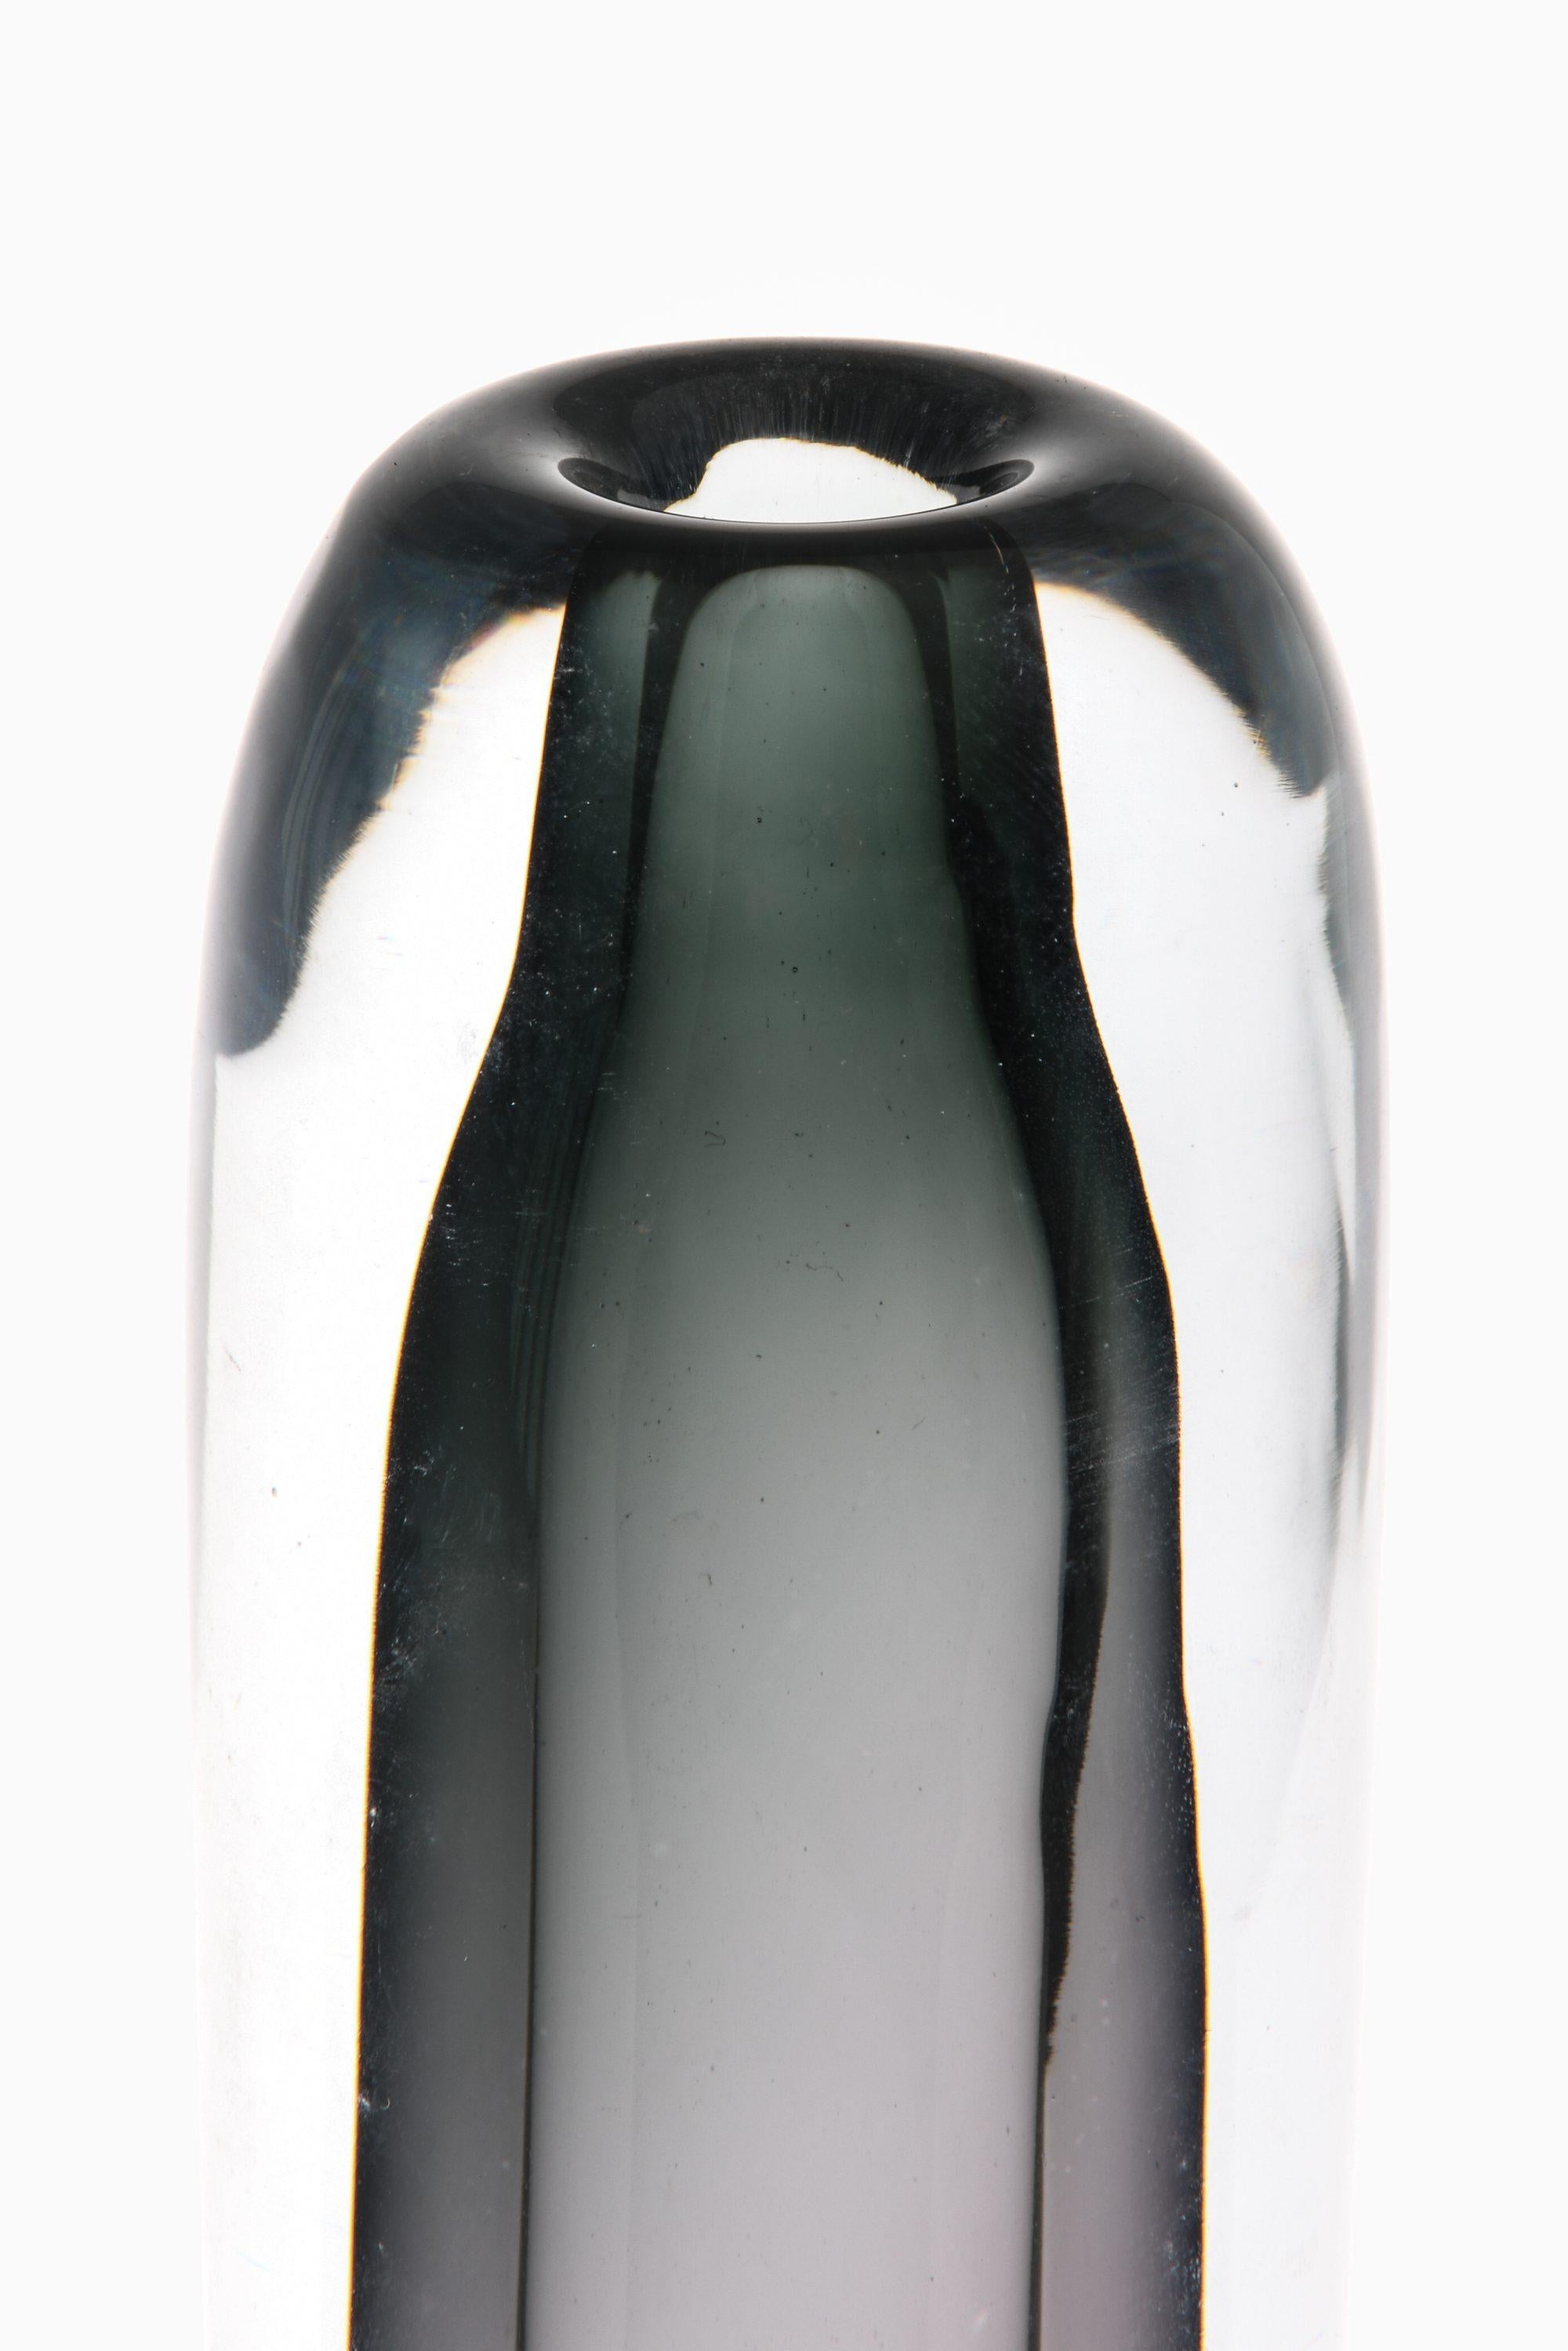 Vase en verre noir de Gunnar Nylund, années 1950

Informations supplémentaires :
Matériau : Verre
Style : Milieu du siècle, Scandinave
Produit par Strömbergshyttan en Suède
Dimensions (L x P x H) : 6 x 6 x 28,5 cm
Condit : Bon état vintage, avec de